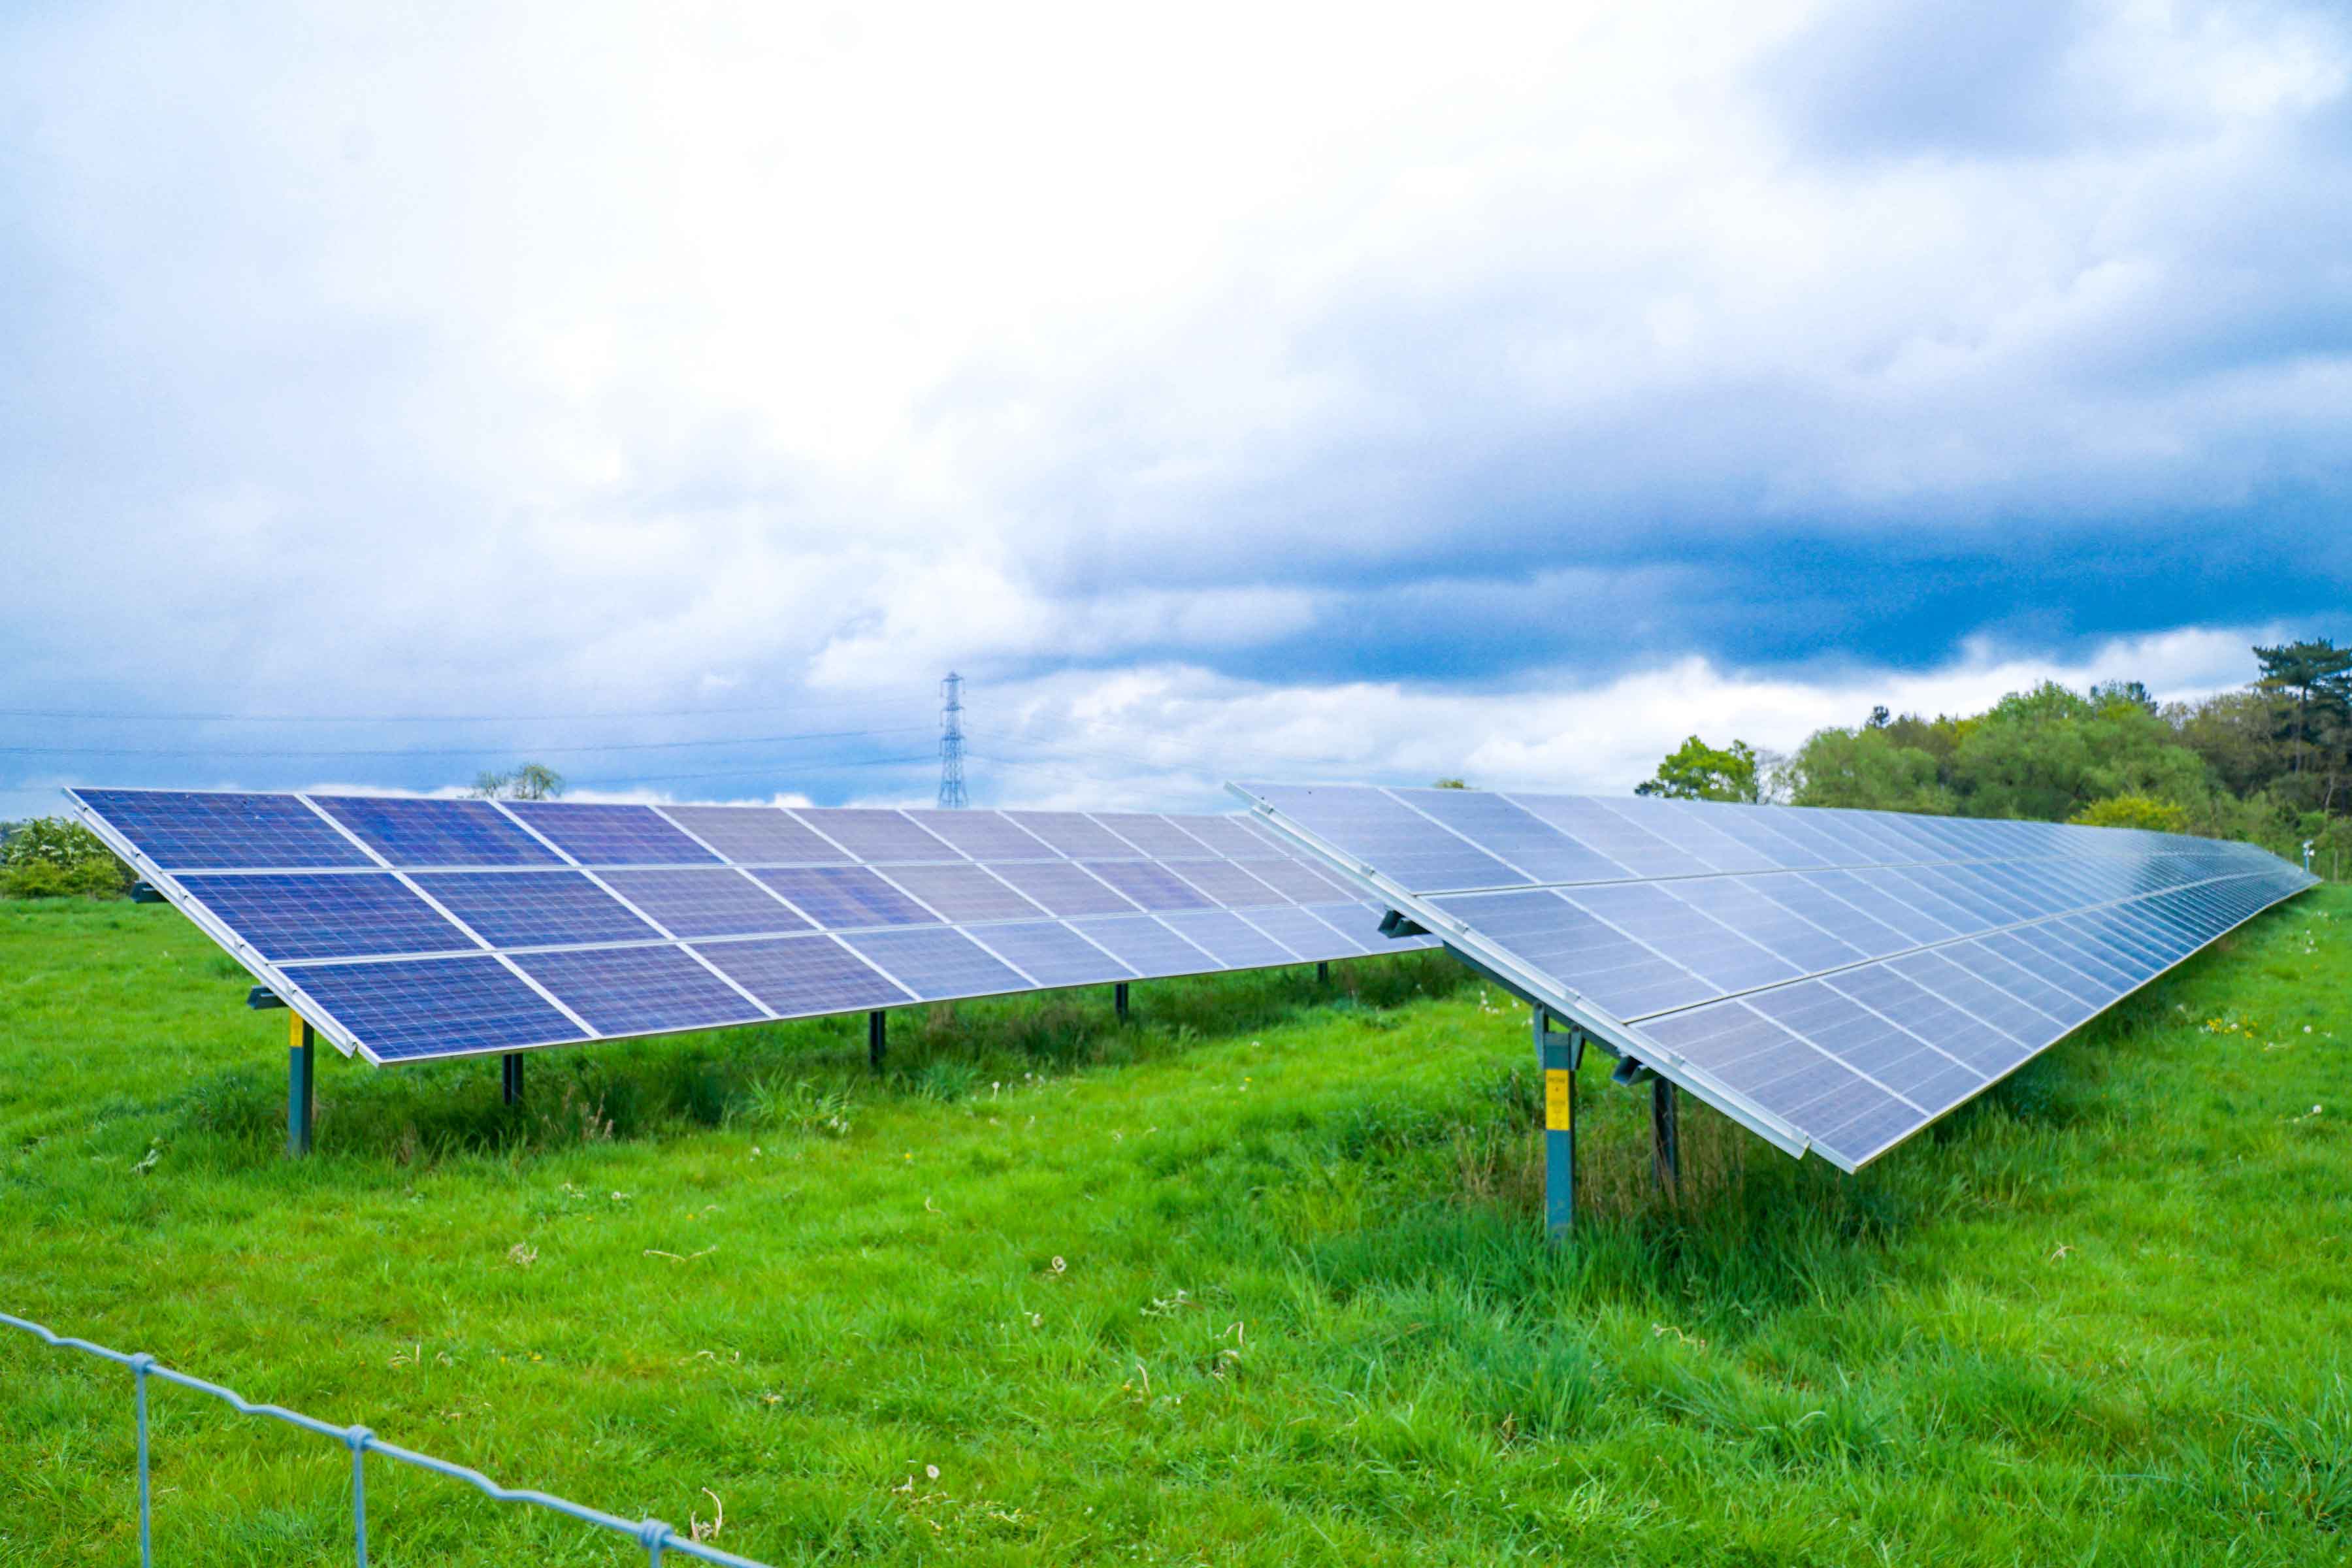 Fischer farms solar panels